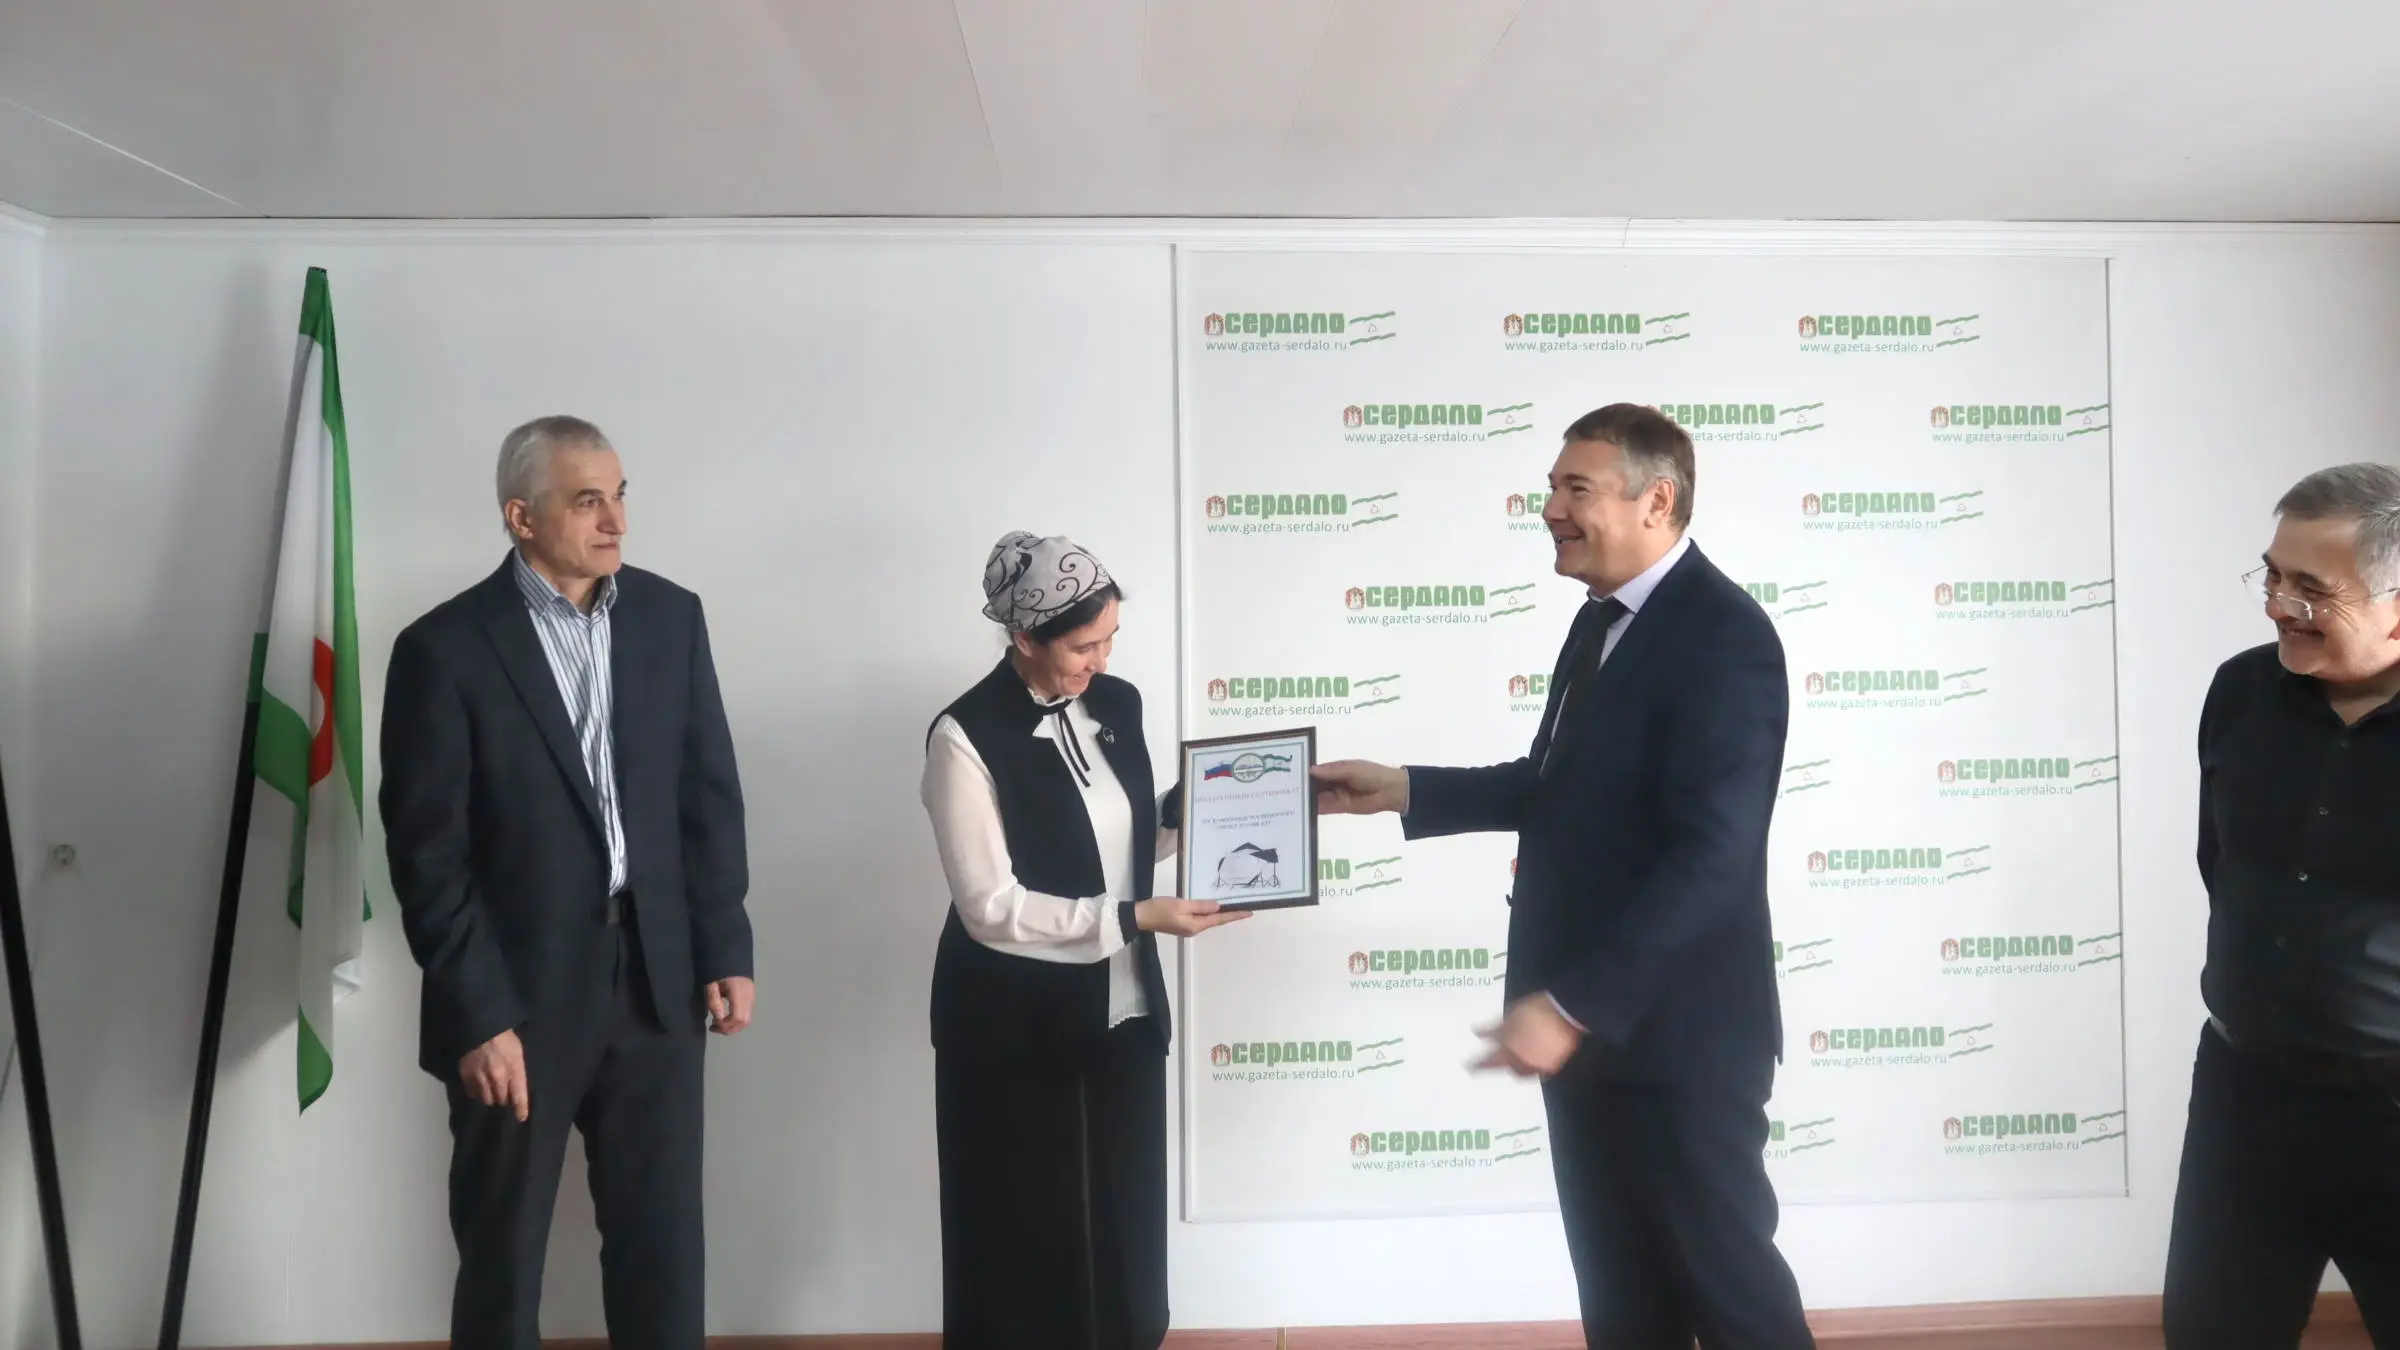 Новости Ингушетии: Руководитель Миннаца Ингушетии вручил журналистам «Сердало» подарок